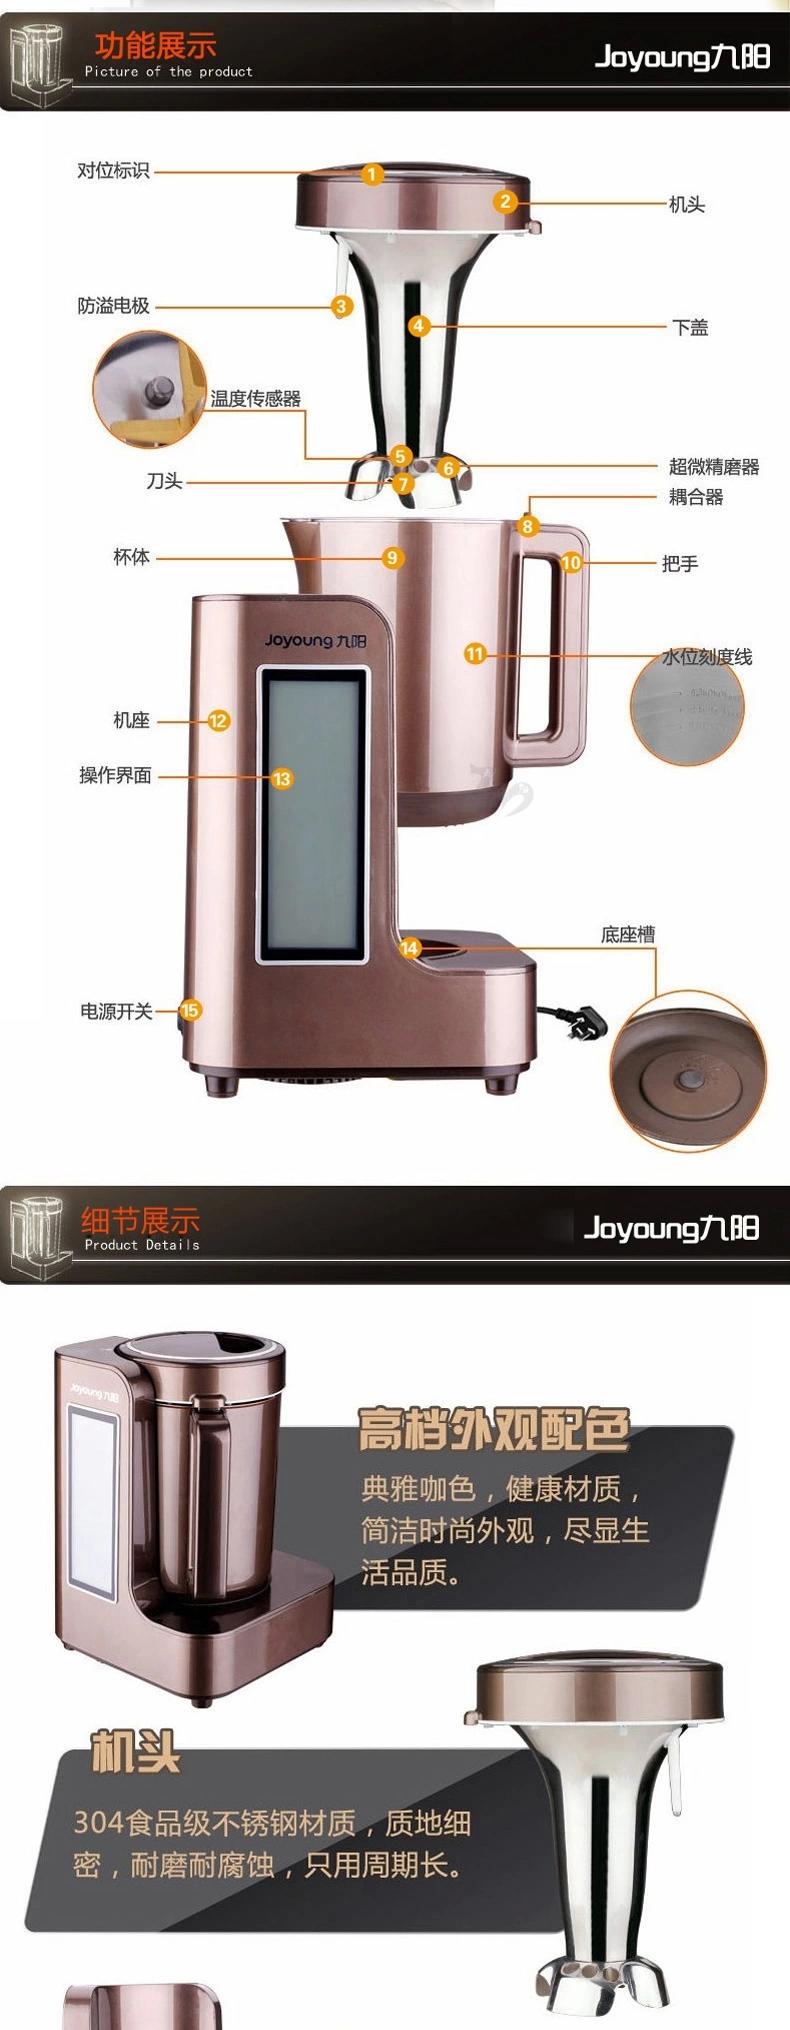 Joyoung/九阳 DJ13B-I6多功能全自动豆浆机 超微静磨